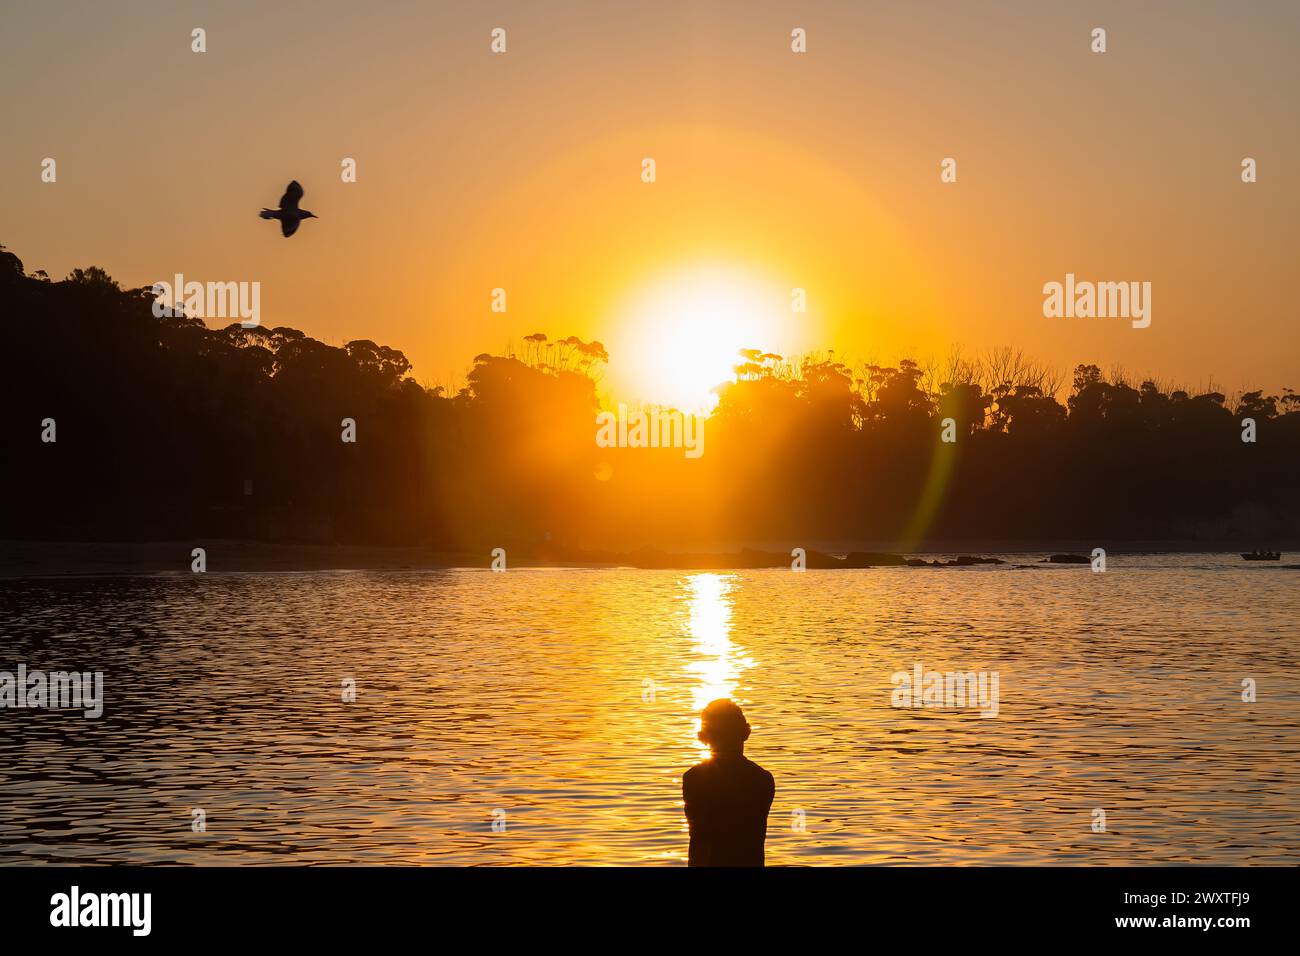 24.03.30-Manyana Beach at Sunset, 214 KM südwestlich von Sydney, NSW, Australien. Silhouetten von Einheimischen, die sich entspannen. Der Strand von Manyana verläuft von Manyana Villag Stockfoto